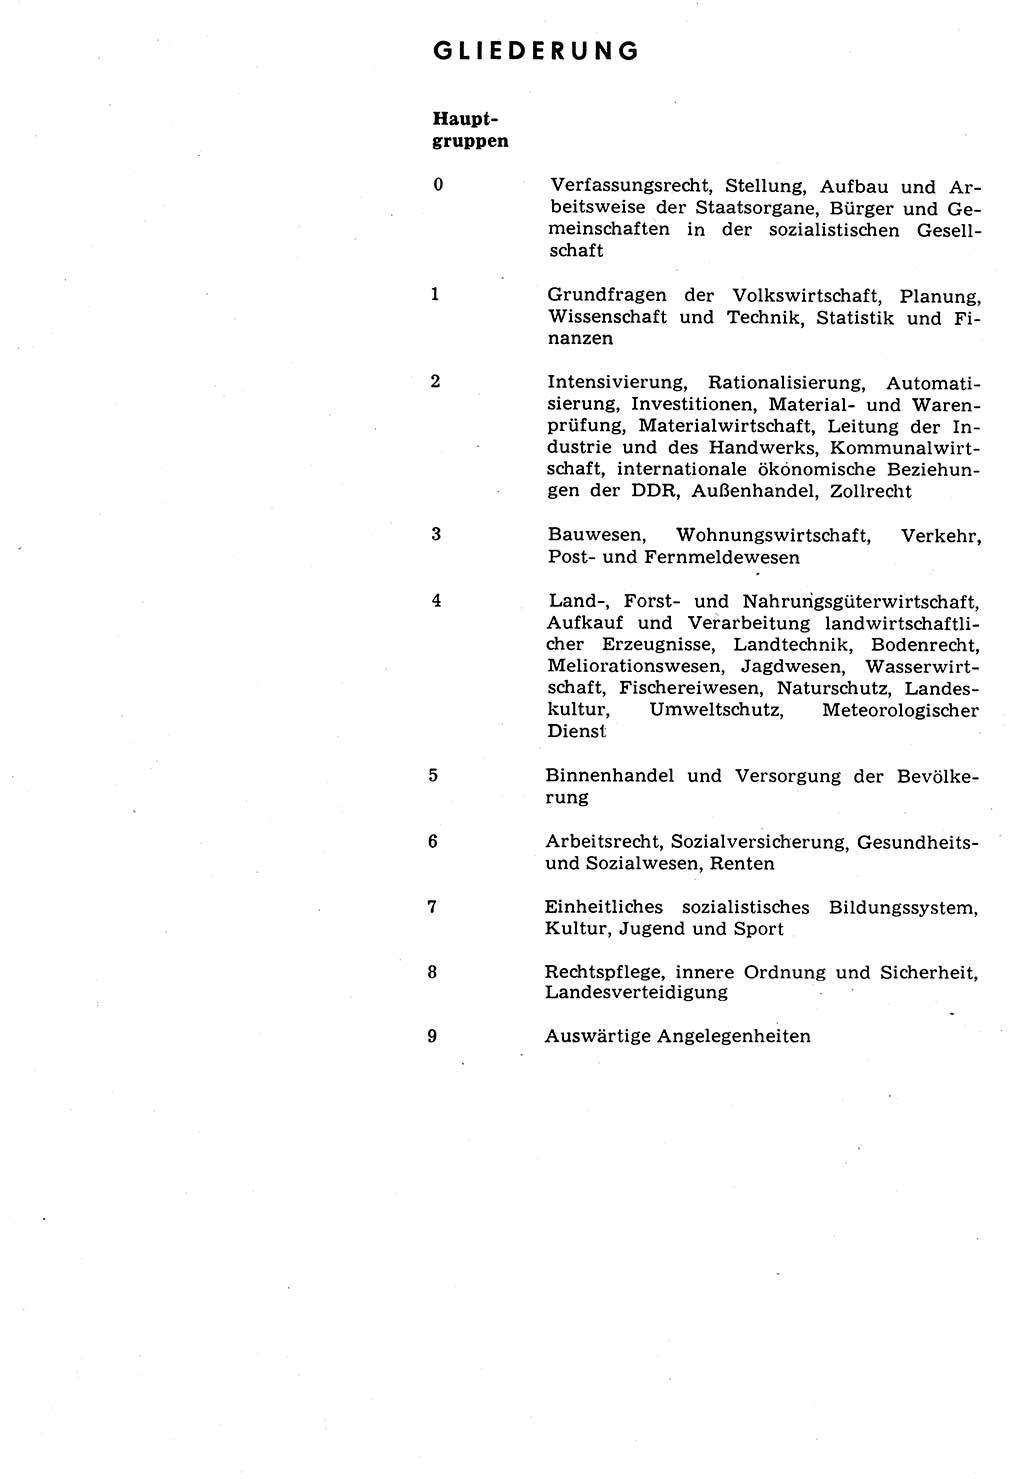 Das geltende Recht der Deutschen Demokratischen Republik (DDR) 1949-1988, Seite 244 (Gelt. R. DDR 1949-1988, S. 244)